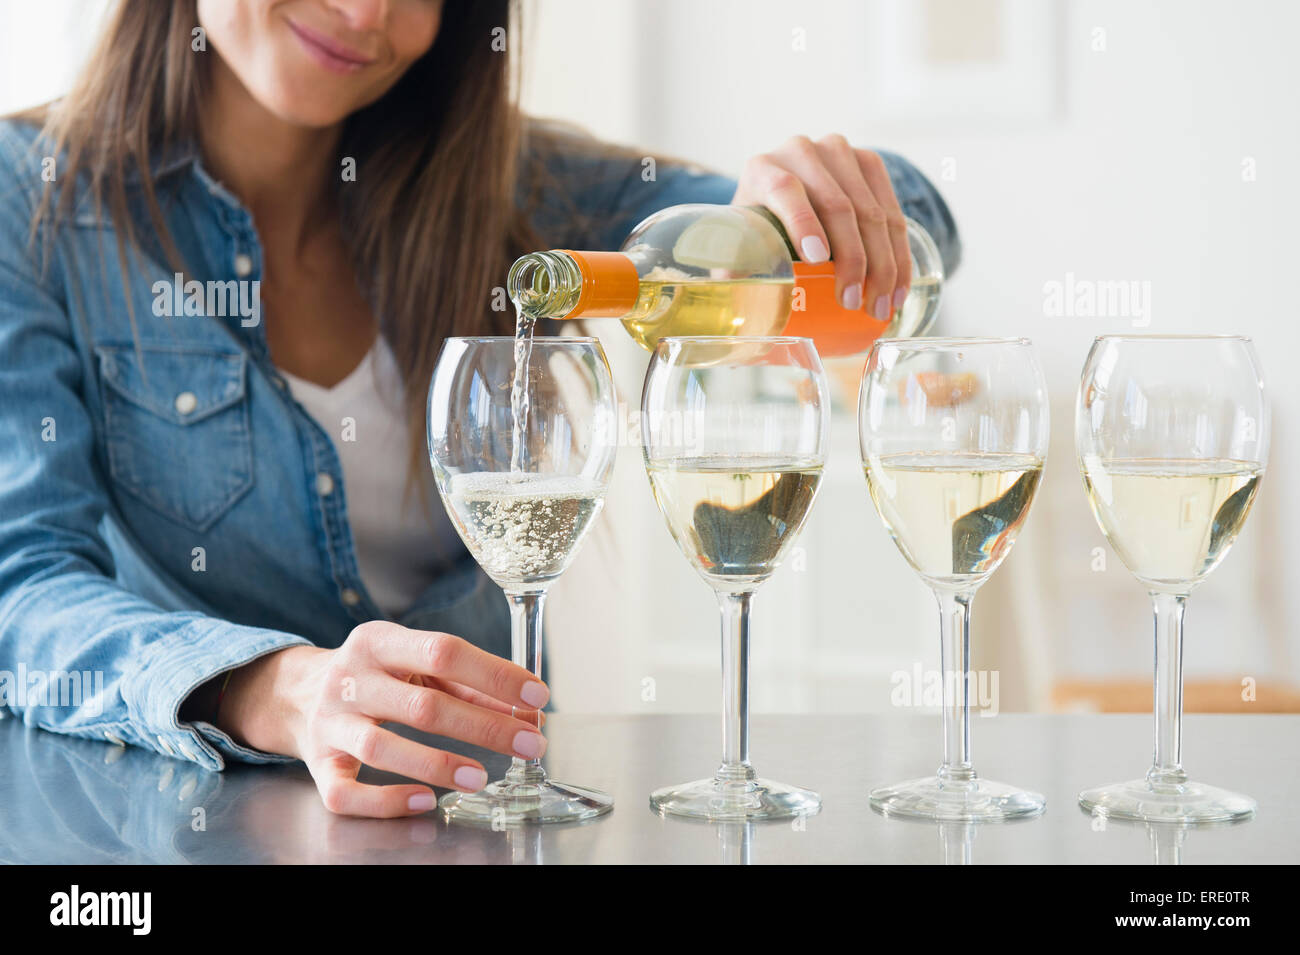 Caucasian woman pouring verres de vin blanc Banque D'Images